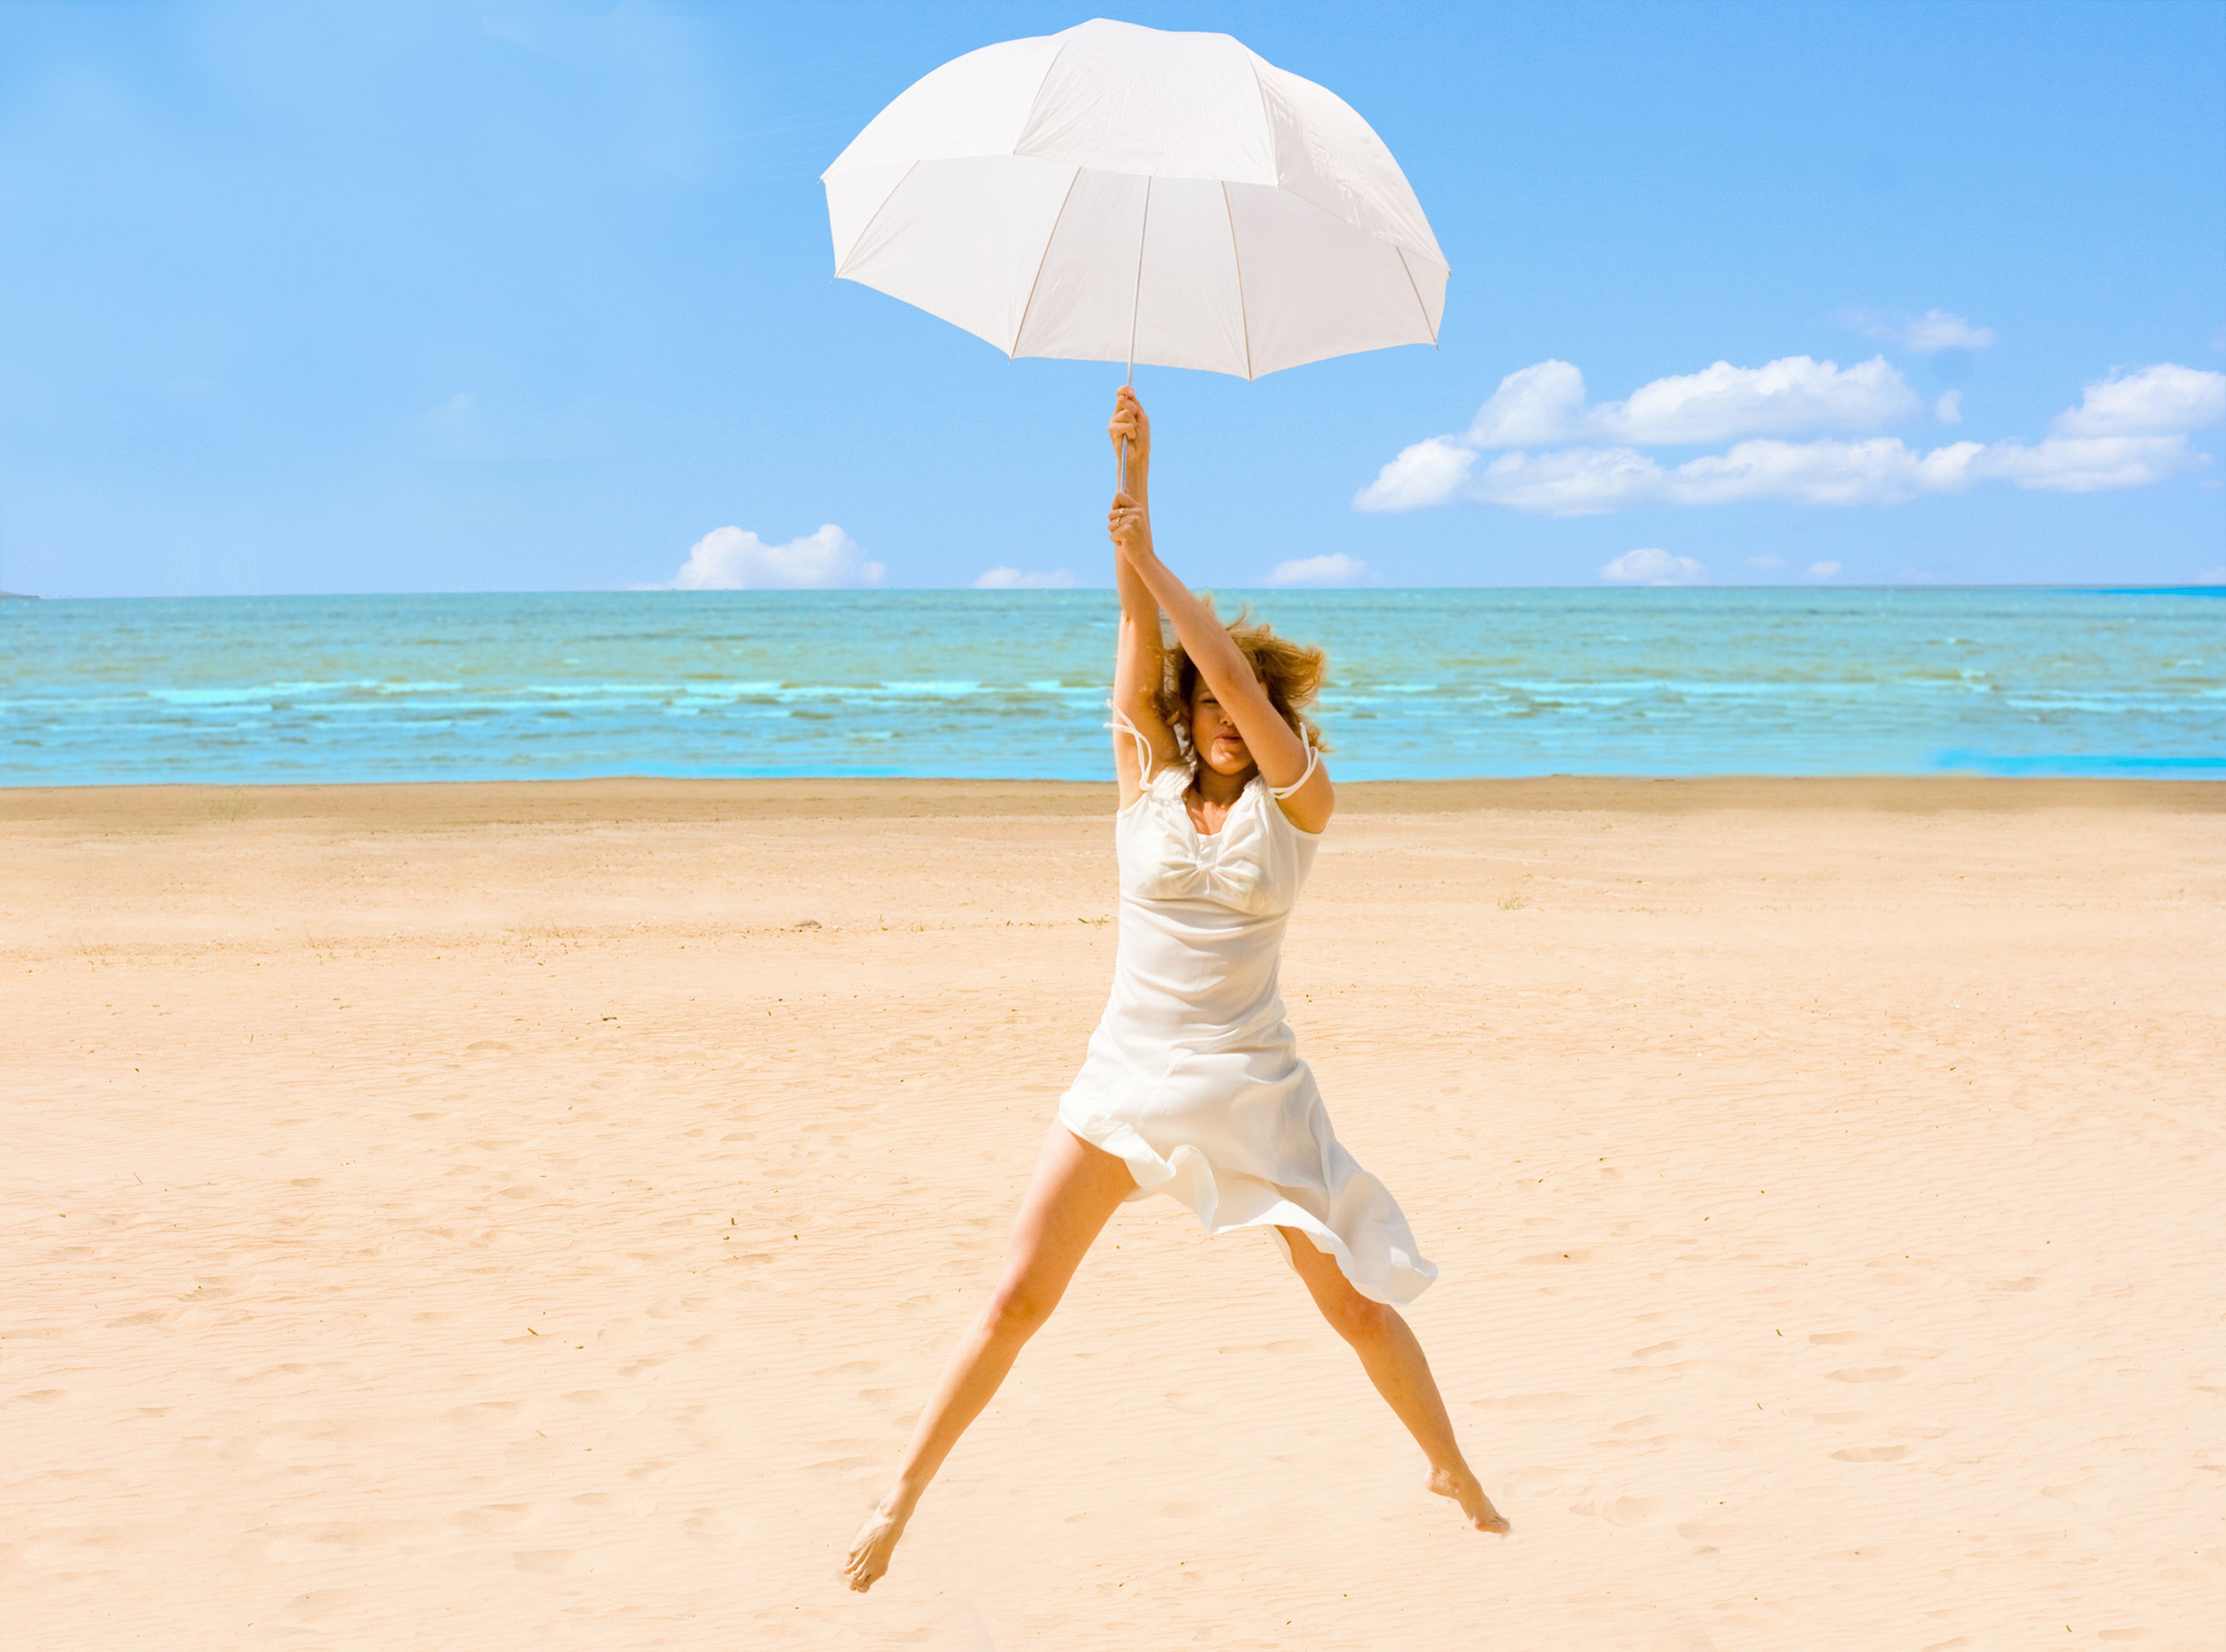 Una mujer sale volando agarrada a un paraguas en la playa.